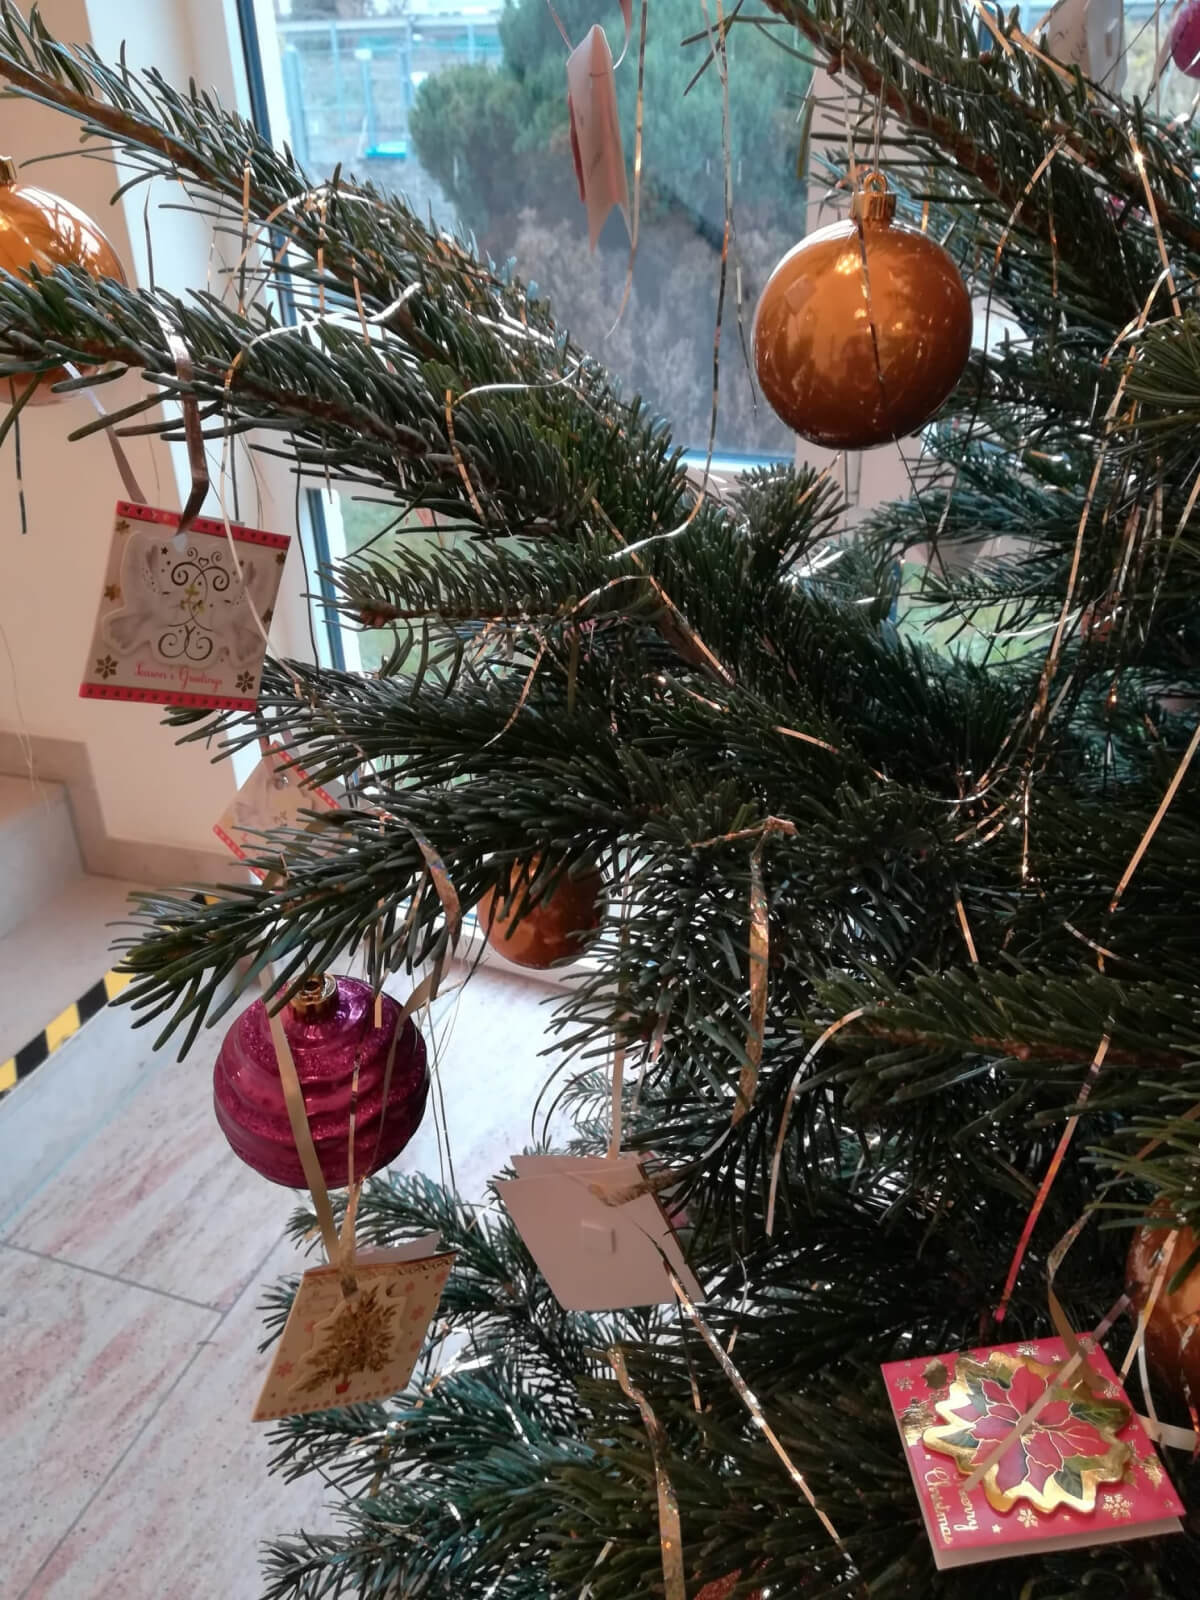 Wunschzettel hängen an Weihnachtsbaum für die Wunschbaum-Aktion im Pflegeheim "AGO Rosbach"